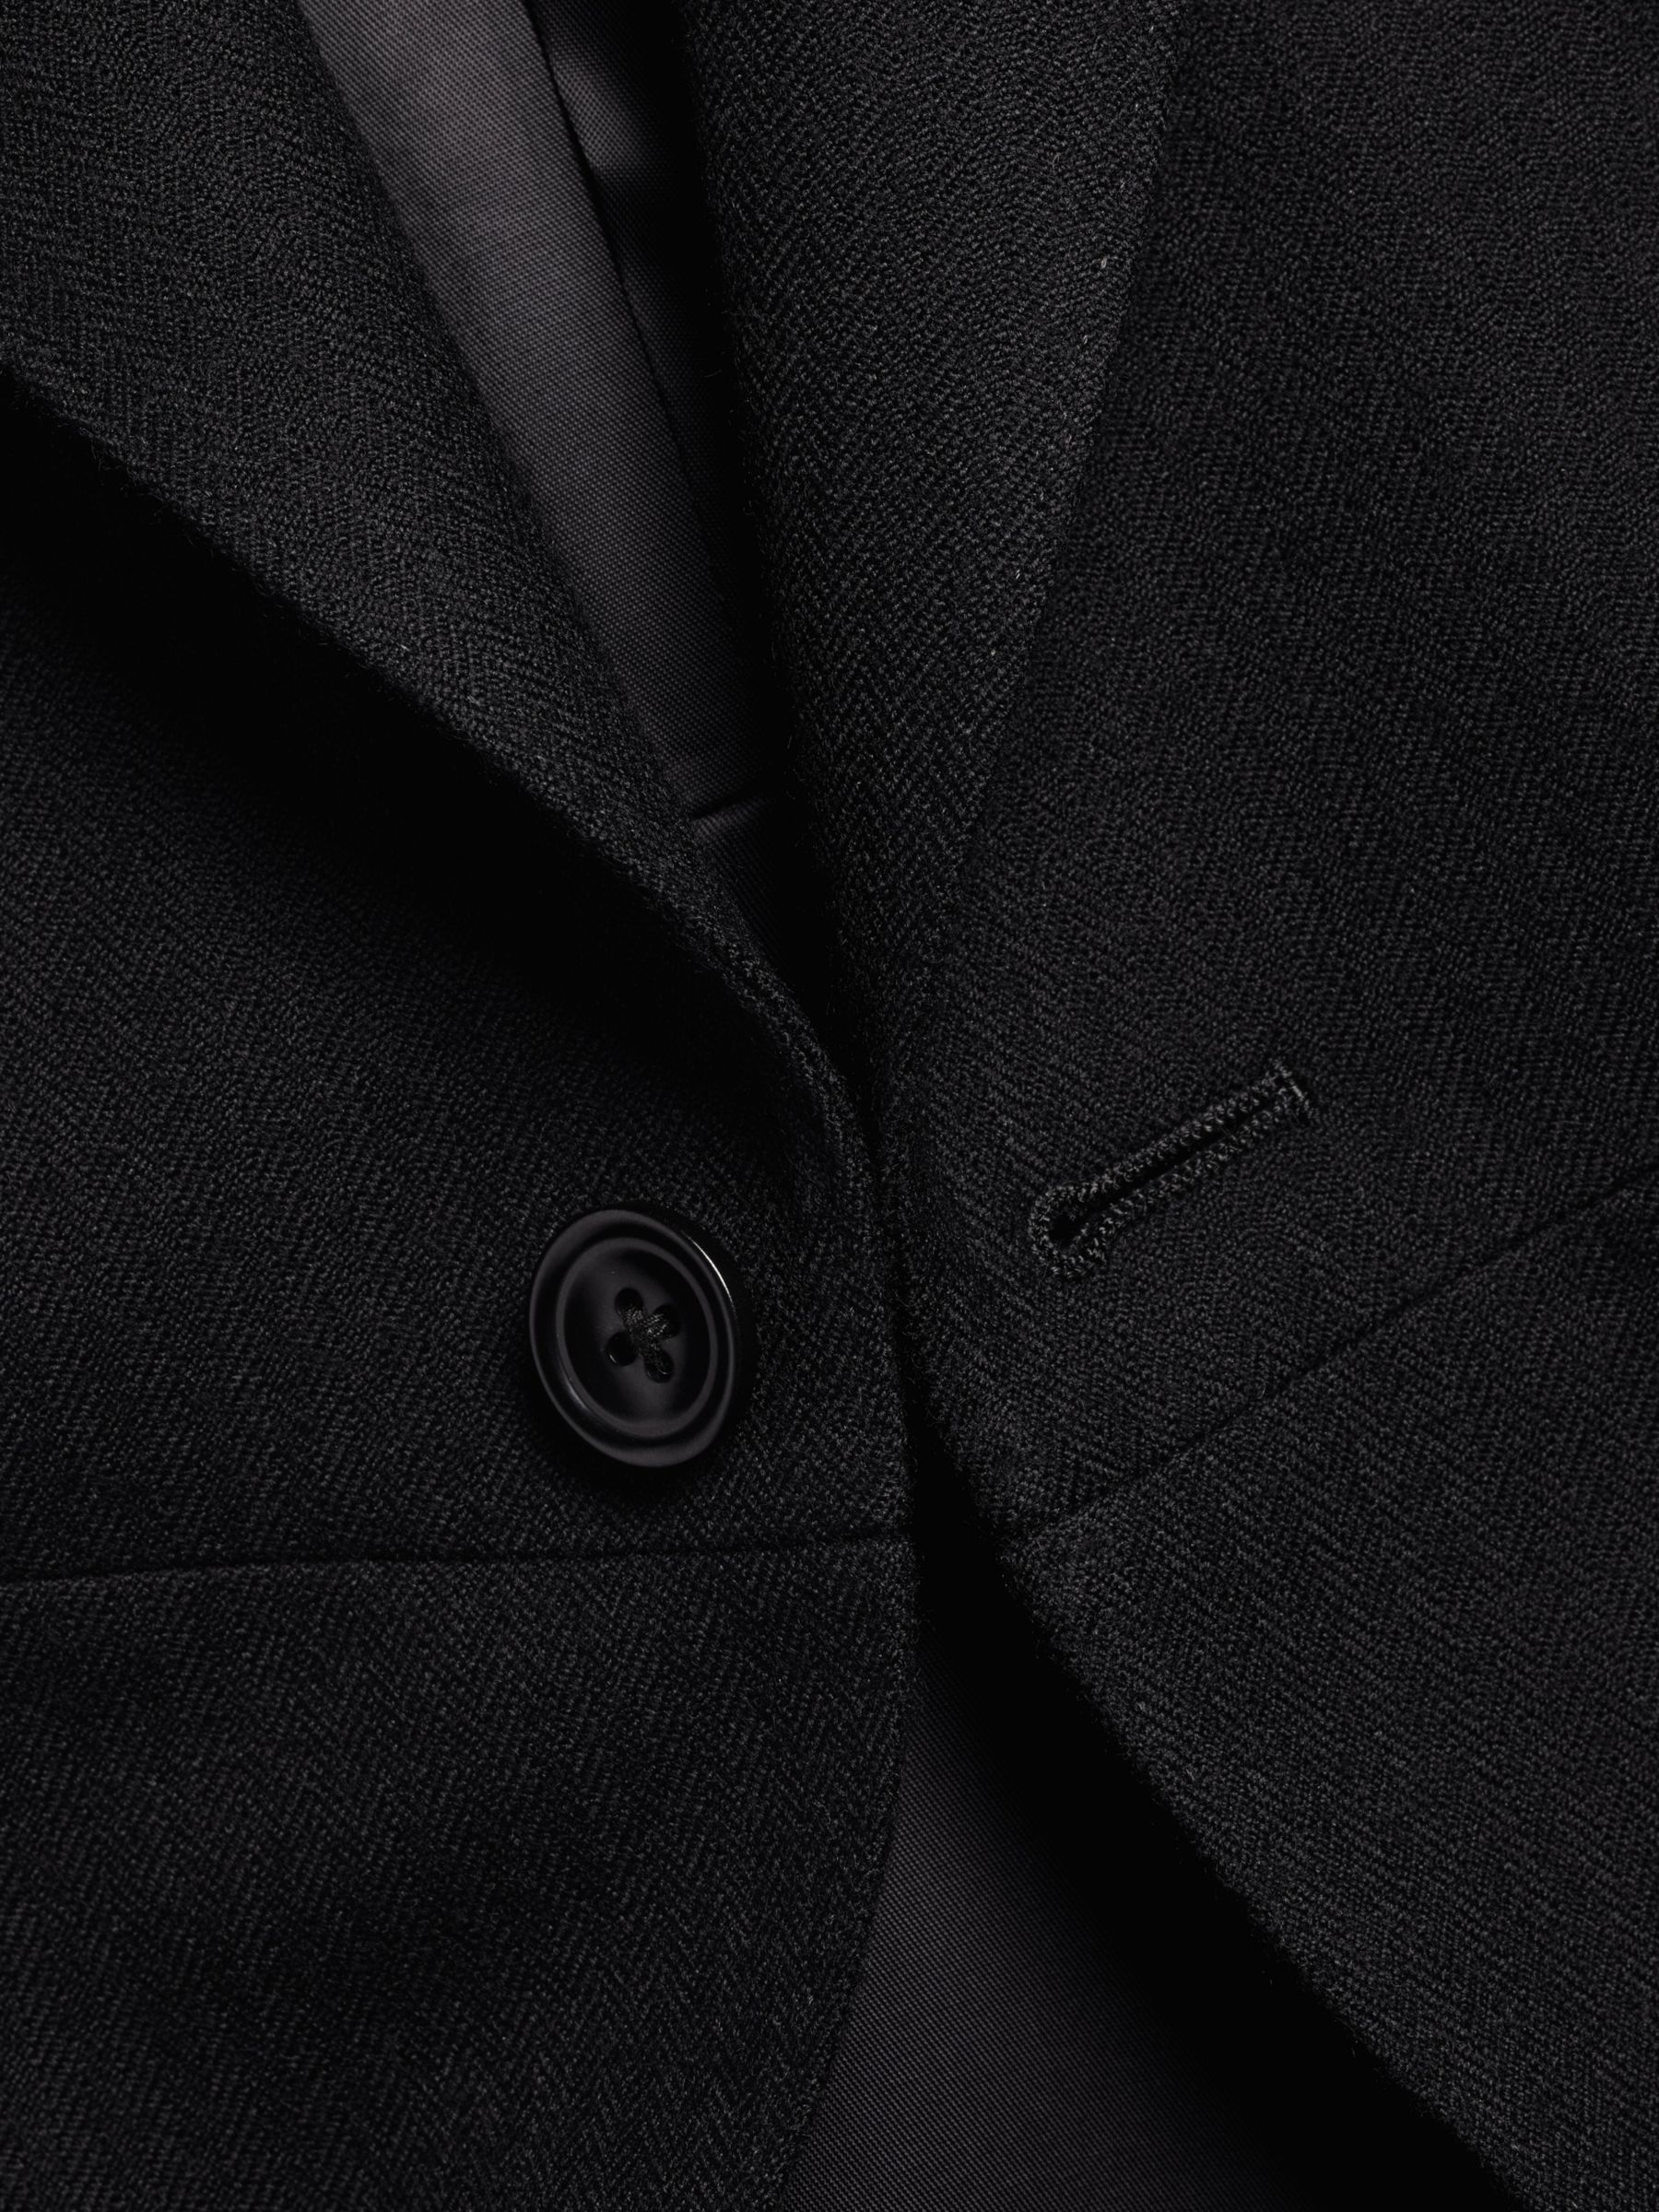 Charles Tyrwhitt Herringbone Slim Fit Morning Suit Tailcoat, Black, 36R